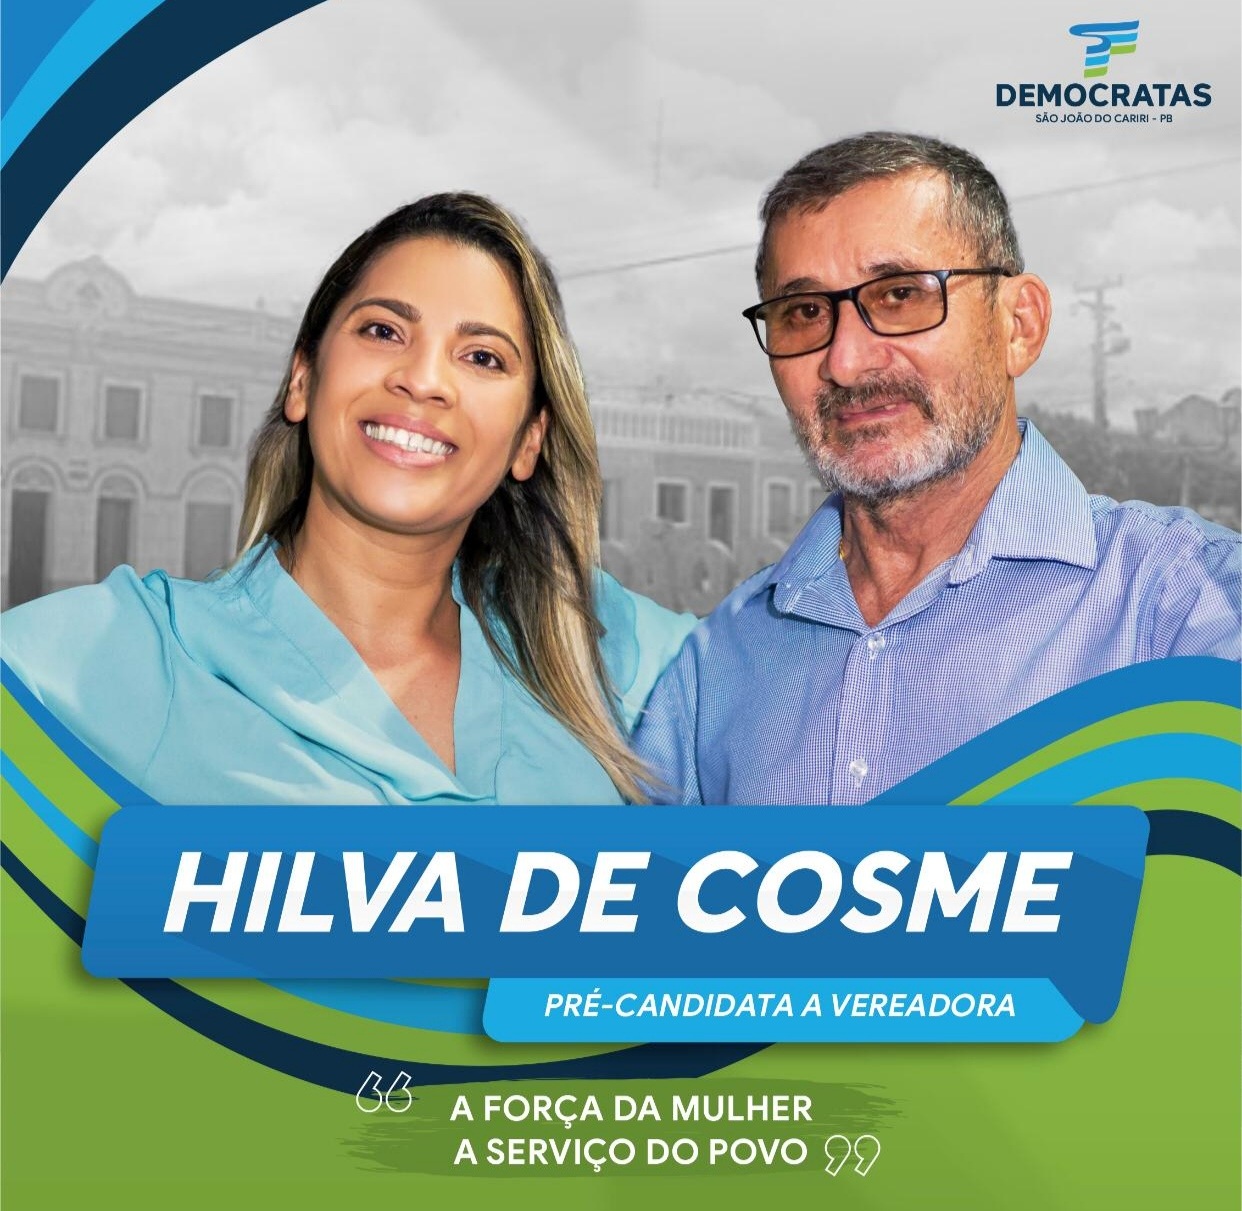 IMG_20200822_211011 Hilva Ferreira, filha de Cosme Gonçalves, anuncia sua pré-candidatura a vereadora em São João do Cariri.